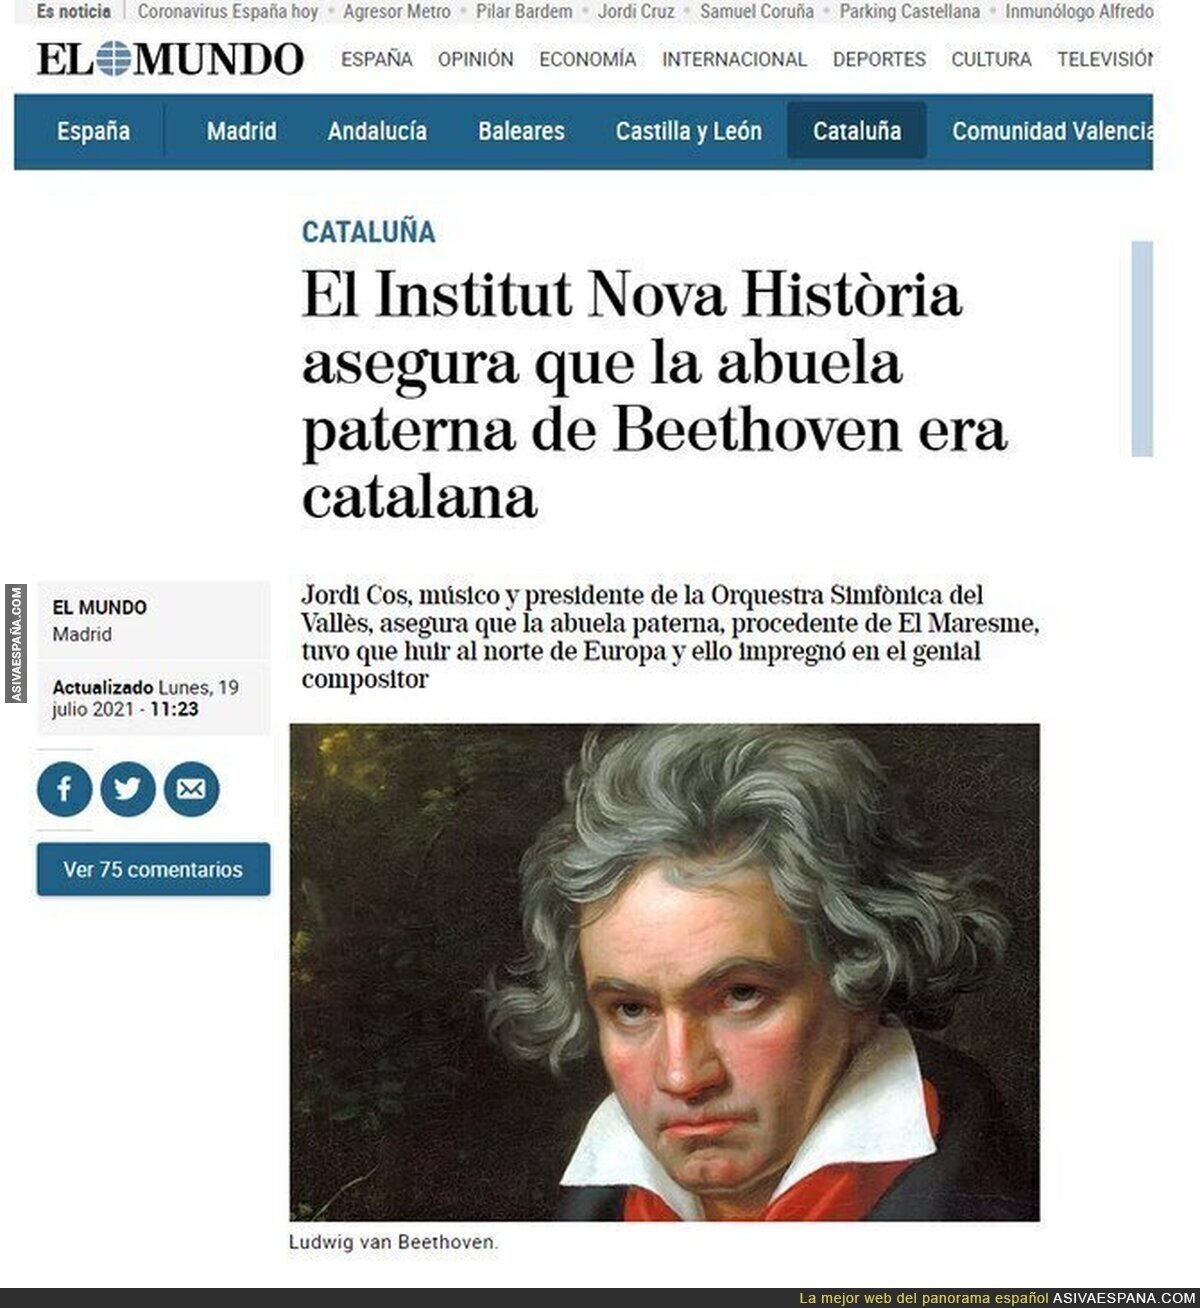 Su abuela era catalana y Beethoven compuso "contra la dominación española"